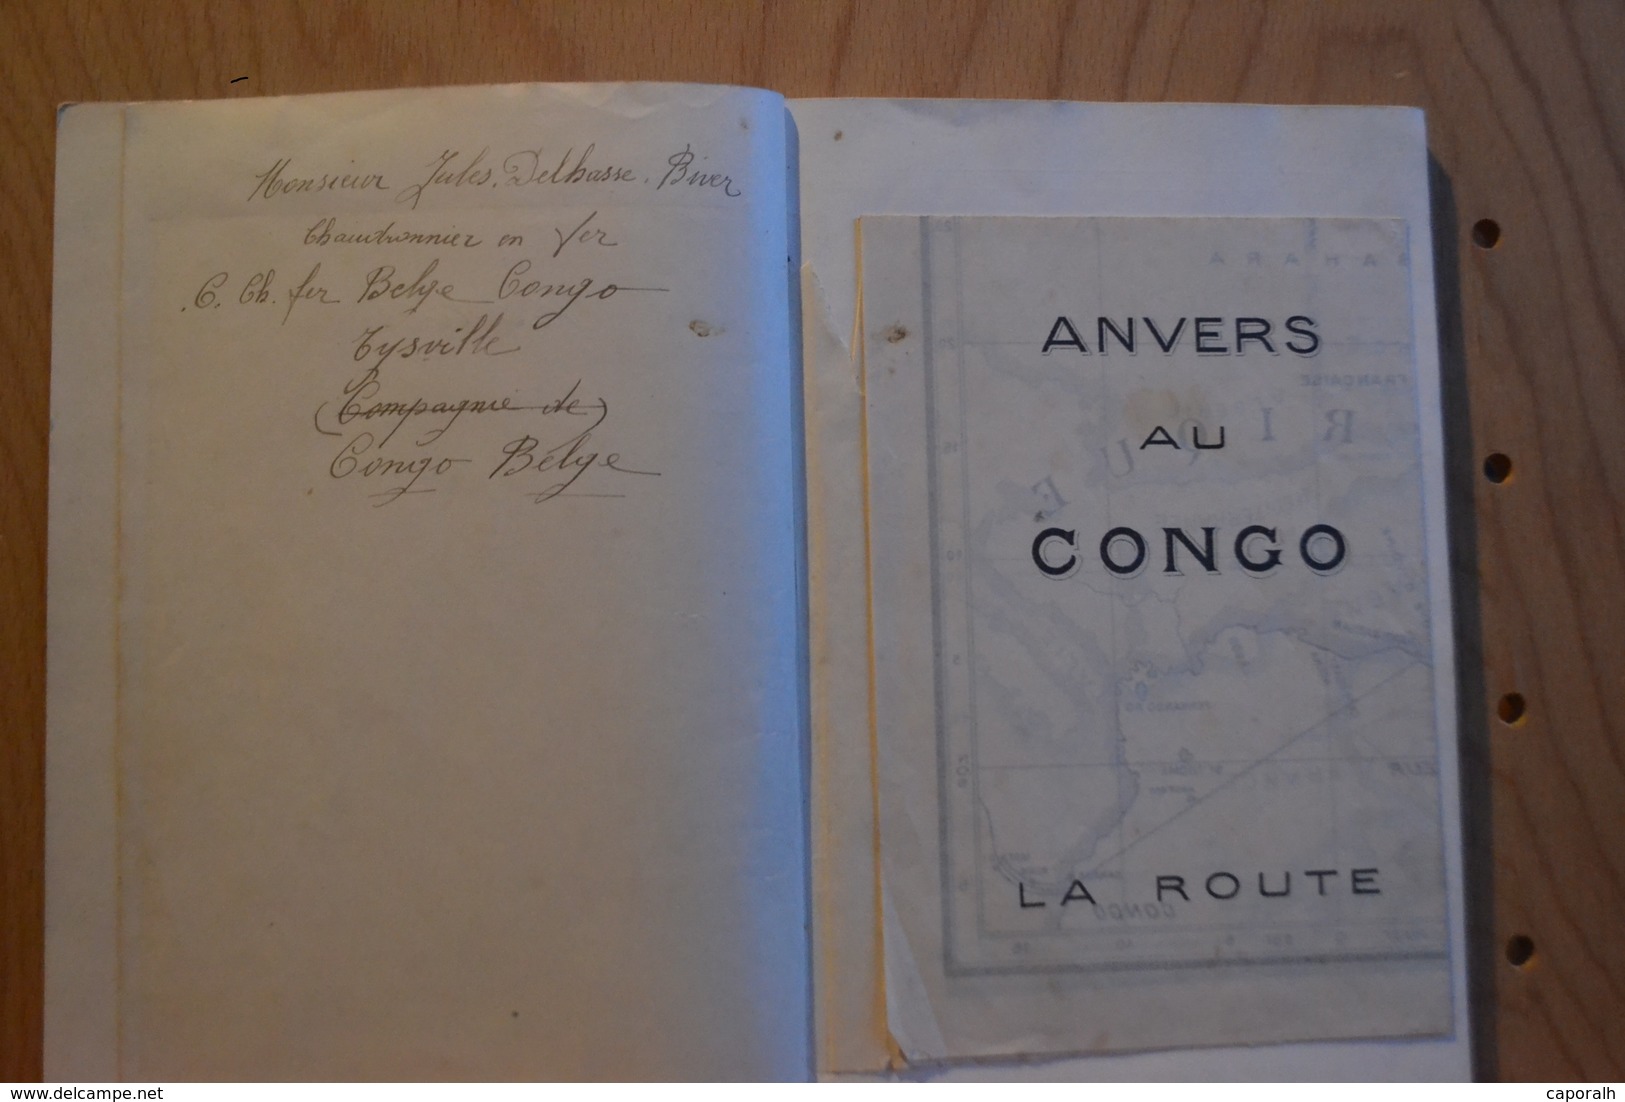 Compagnie Belge Maritime Du Congo . Société Anonyme Anvers Congo. 1923 - Publicités